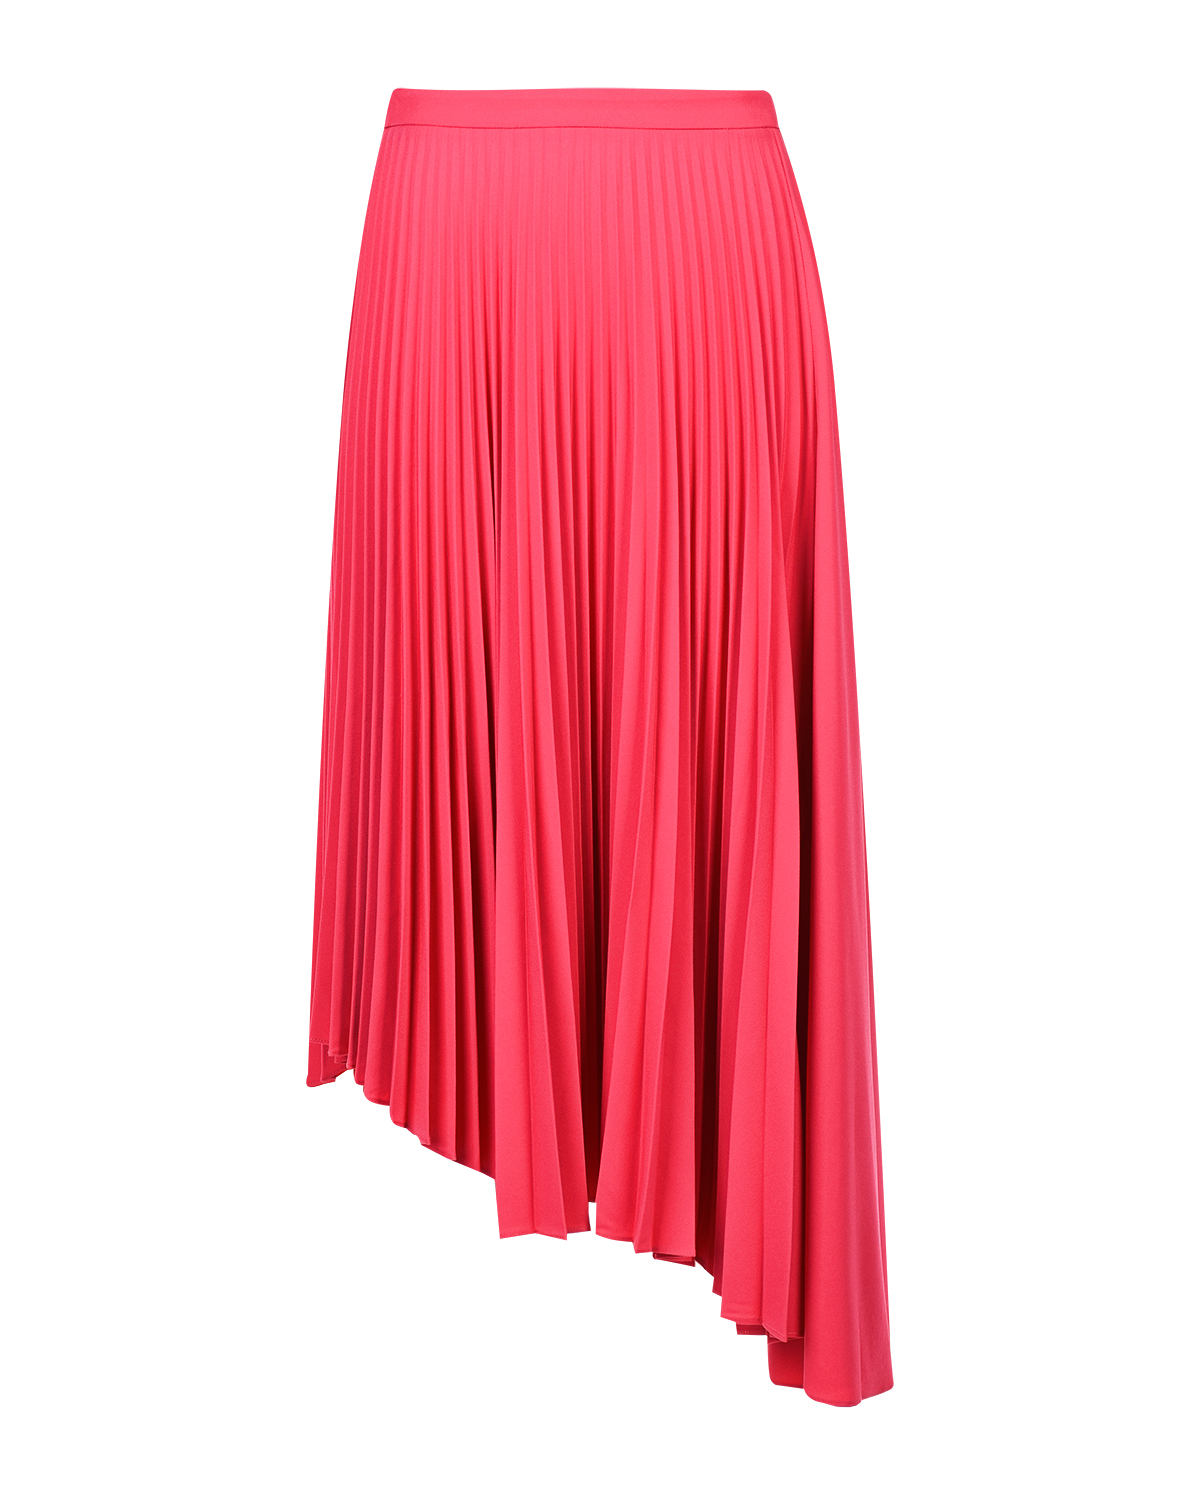 Плиссированная юбка цвета фуксии Markus Lupfer - фото 1